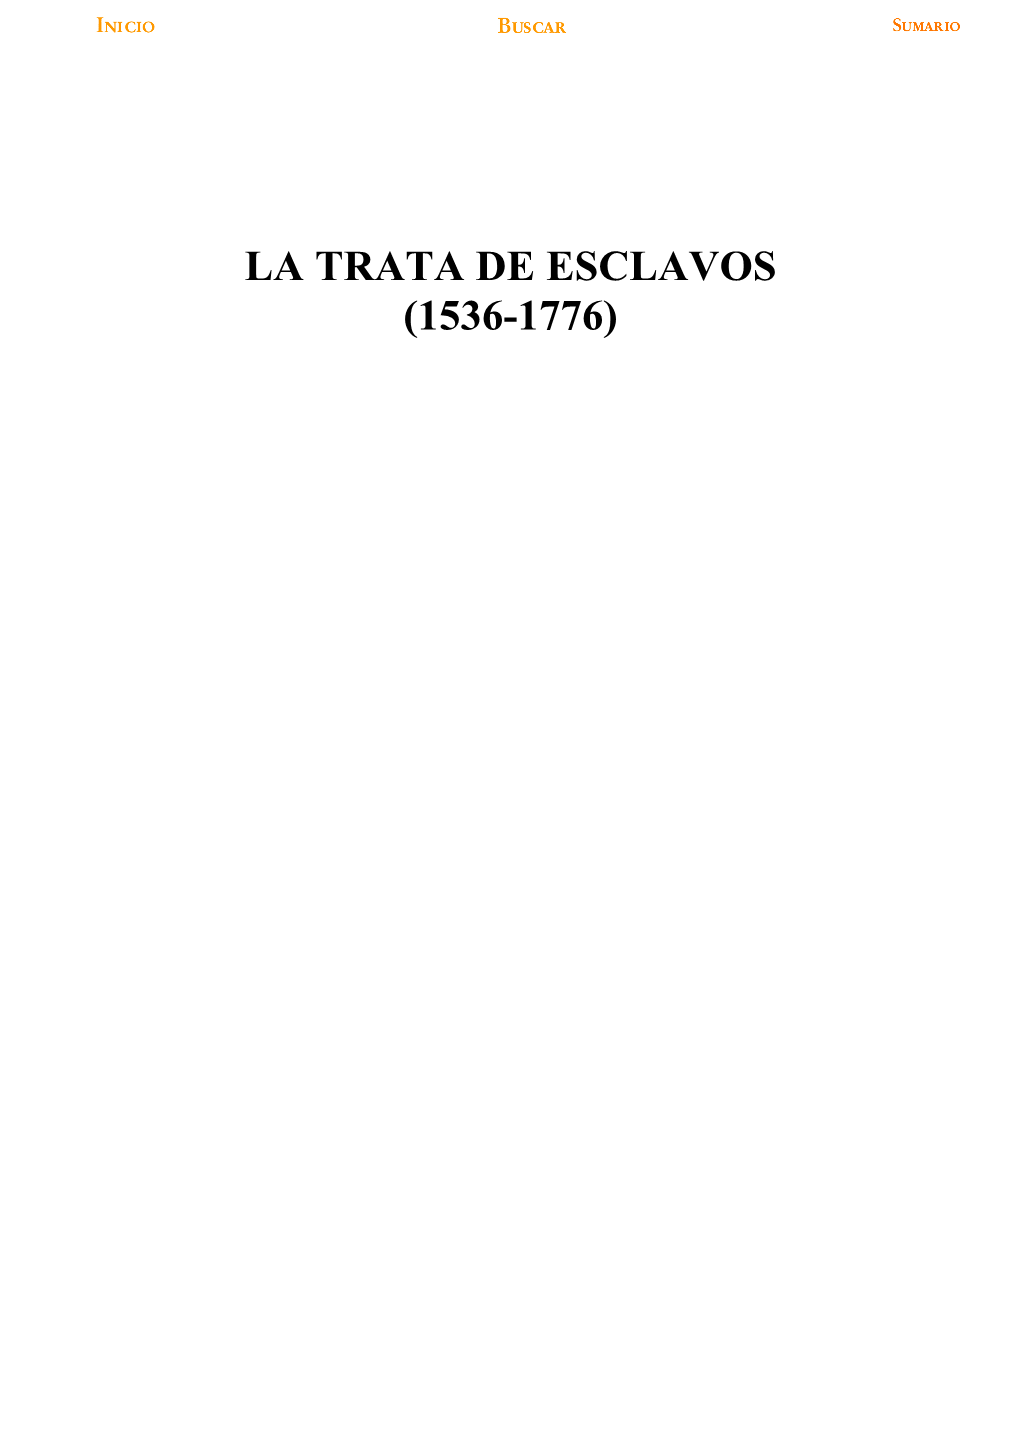 LA TRATA DE ESCLAVOS (1536-1776) Las Licencias.~ - S